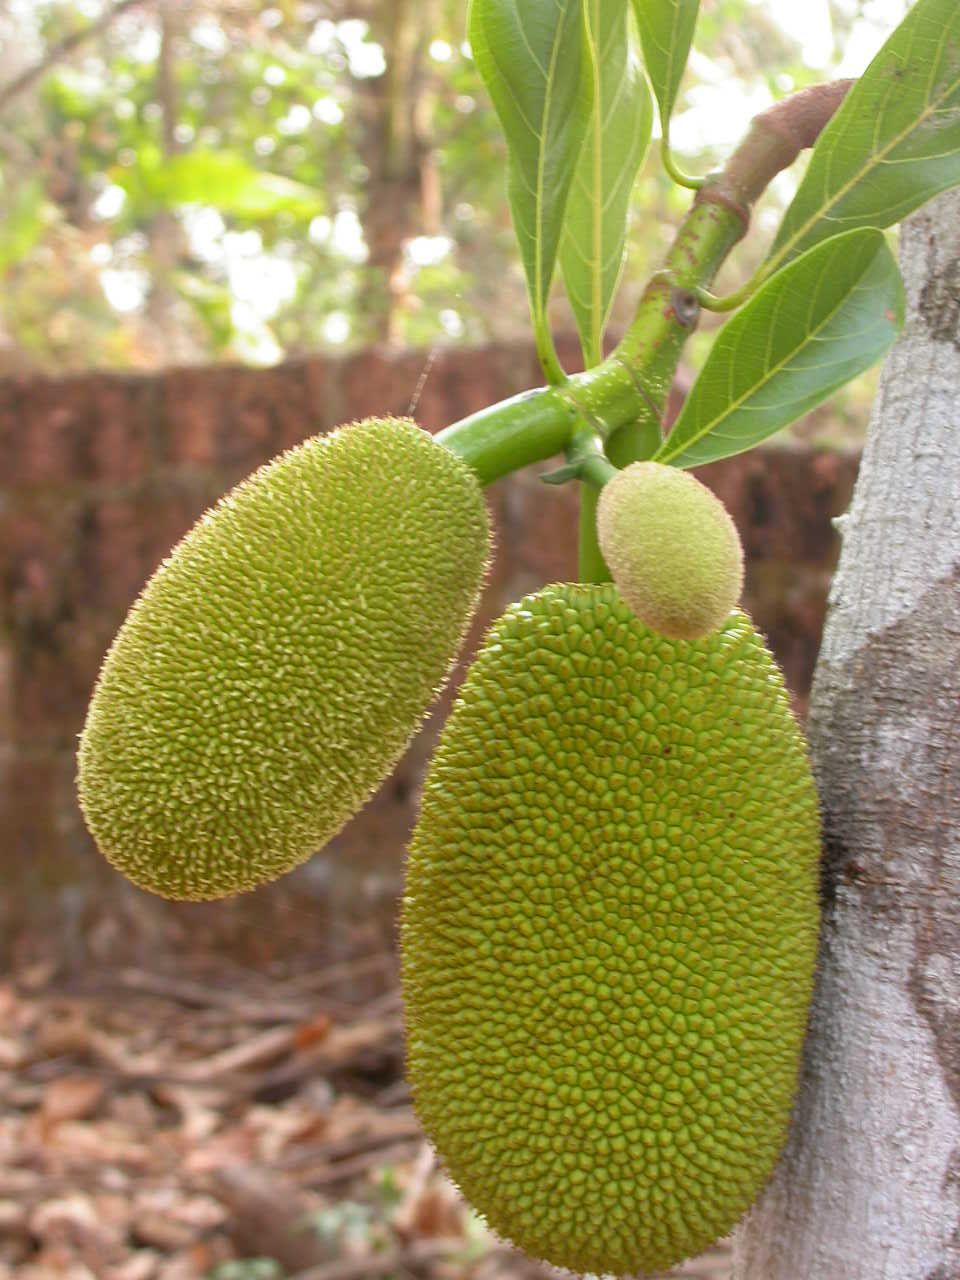 File:Poki poki from jackfruit.jpg - Wikimedia Commons